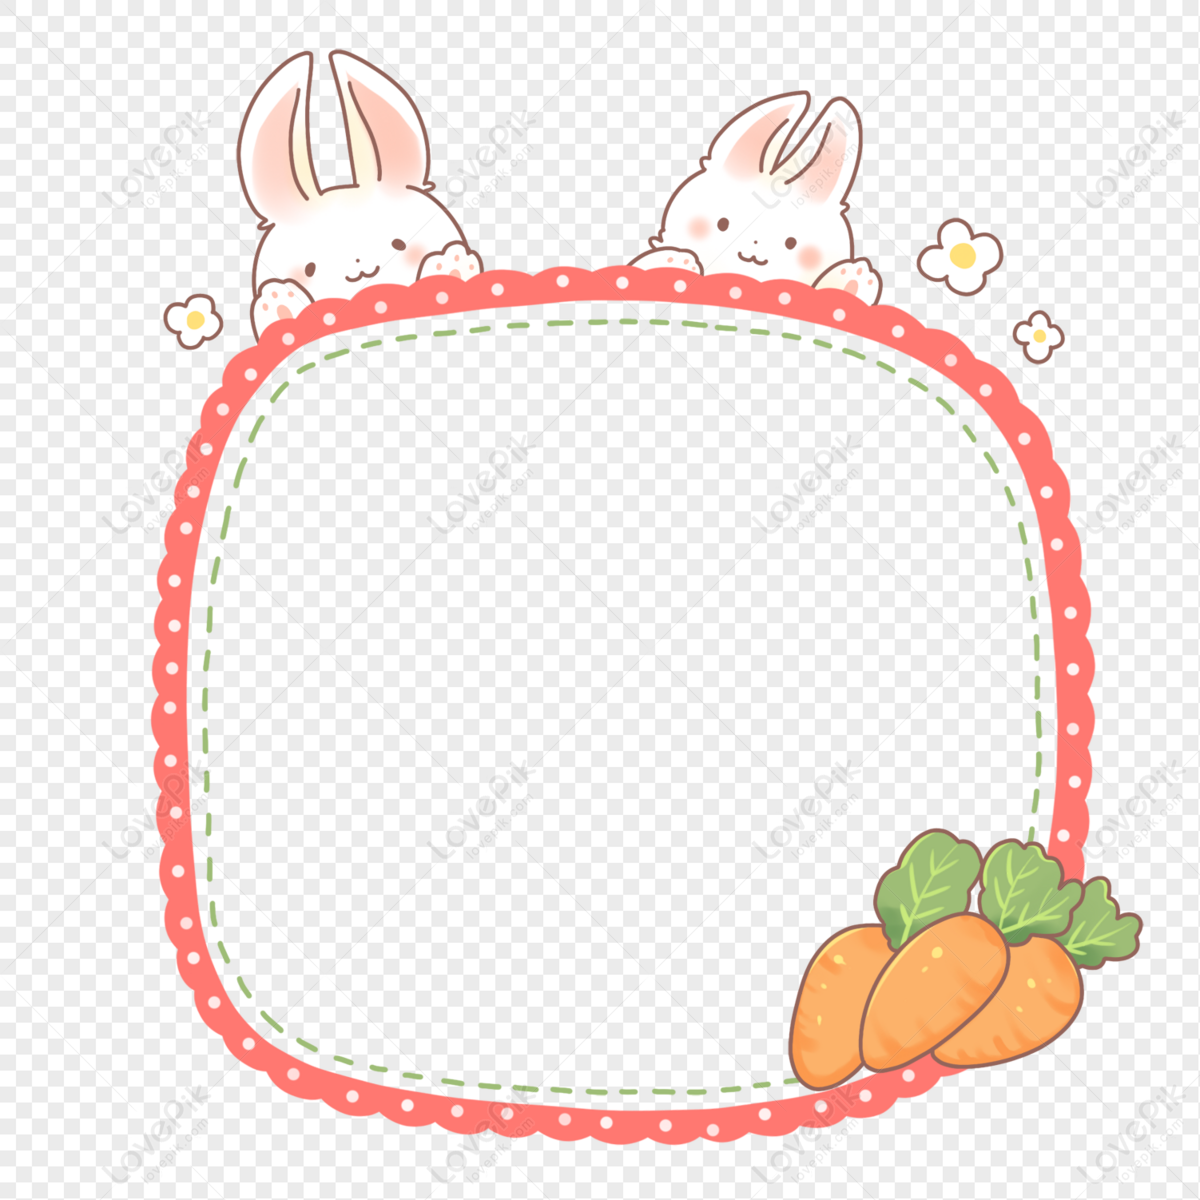 bunny border